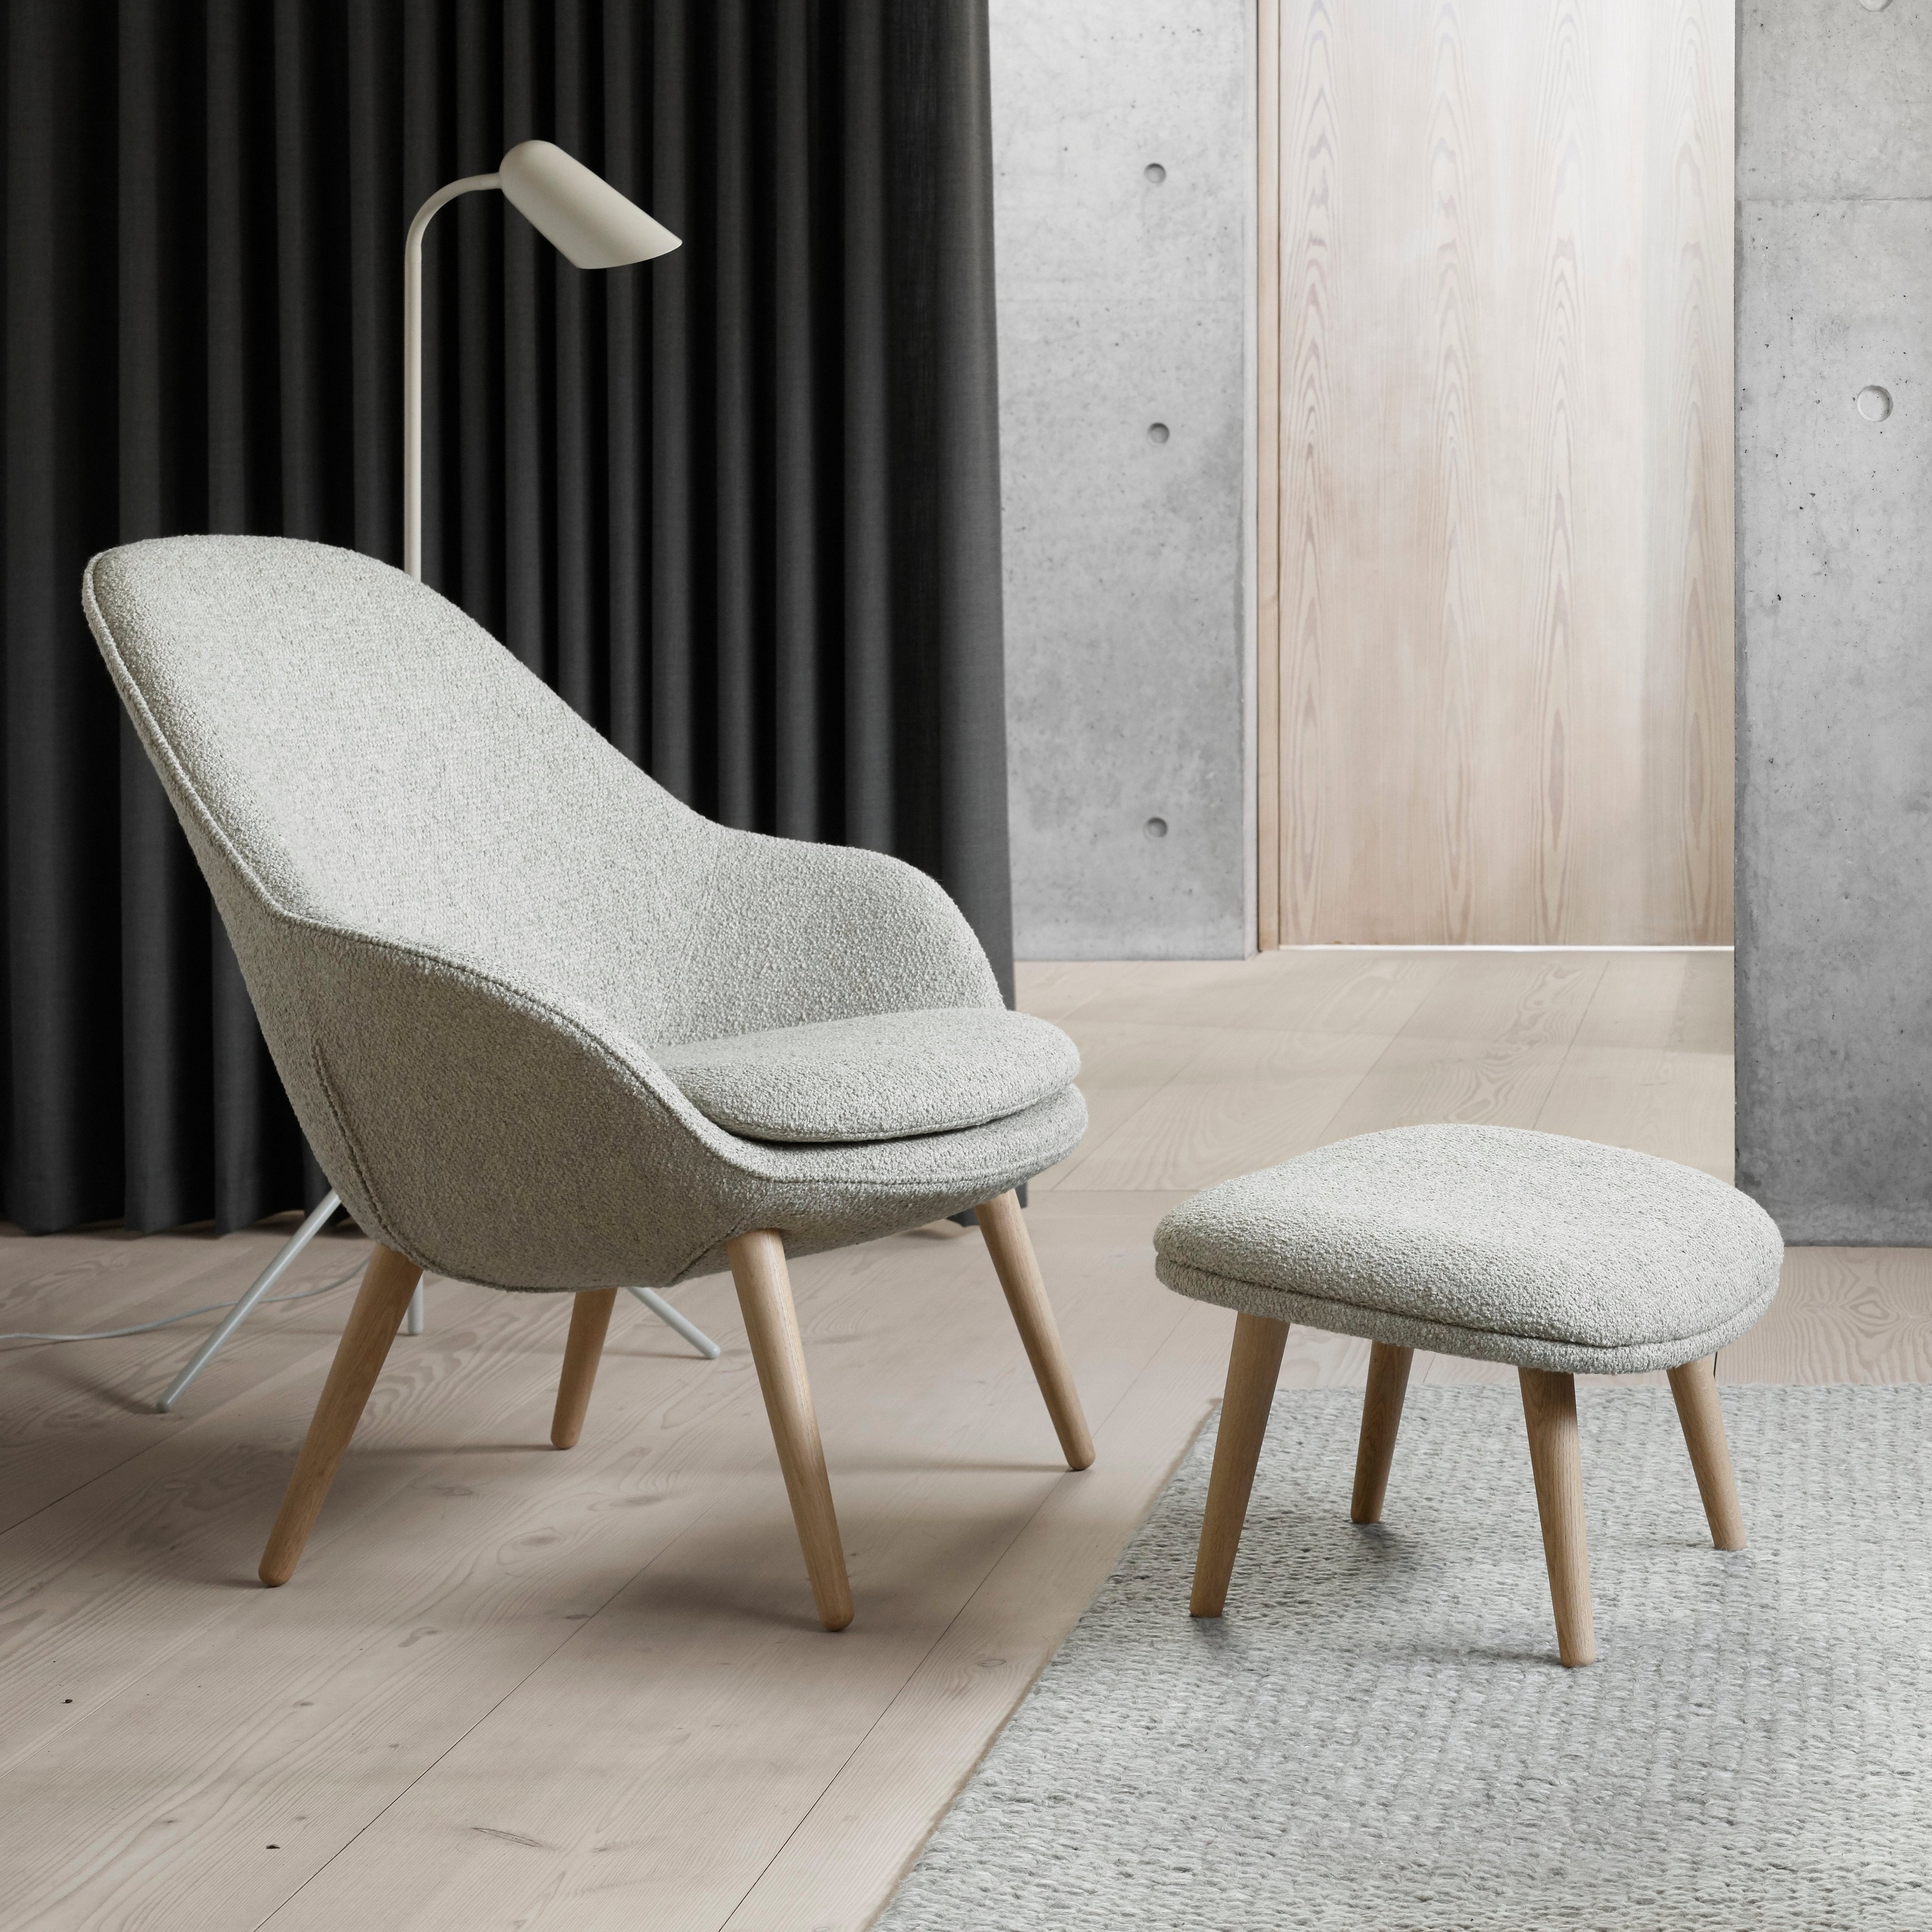 Chaise moderne avec pouf assorti, lampadaire, rideaux foncés et accents en béton.